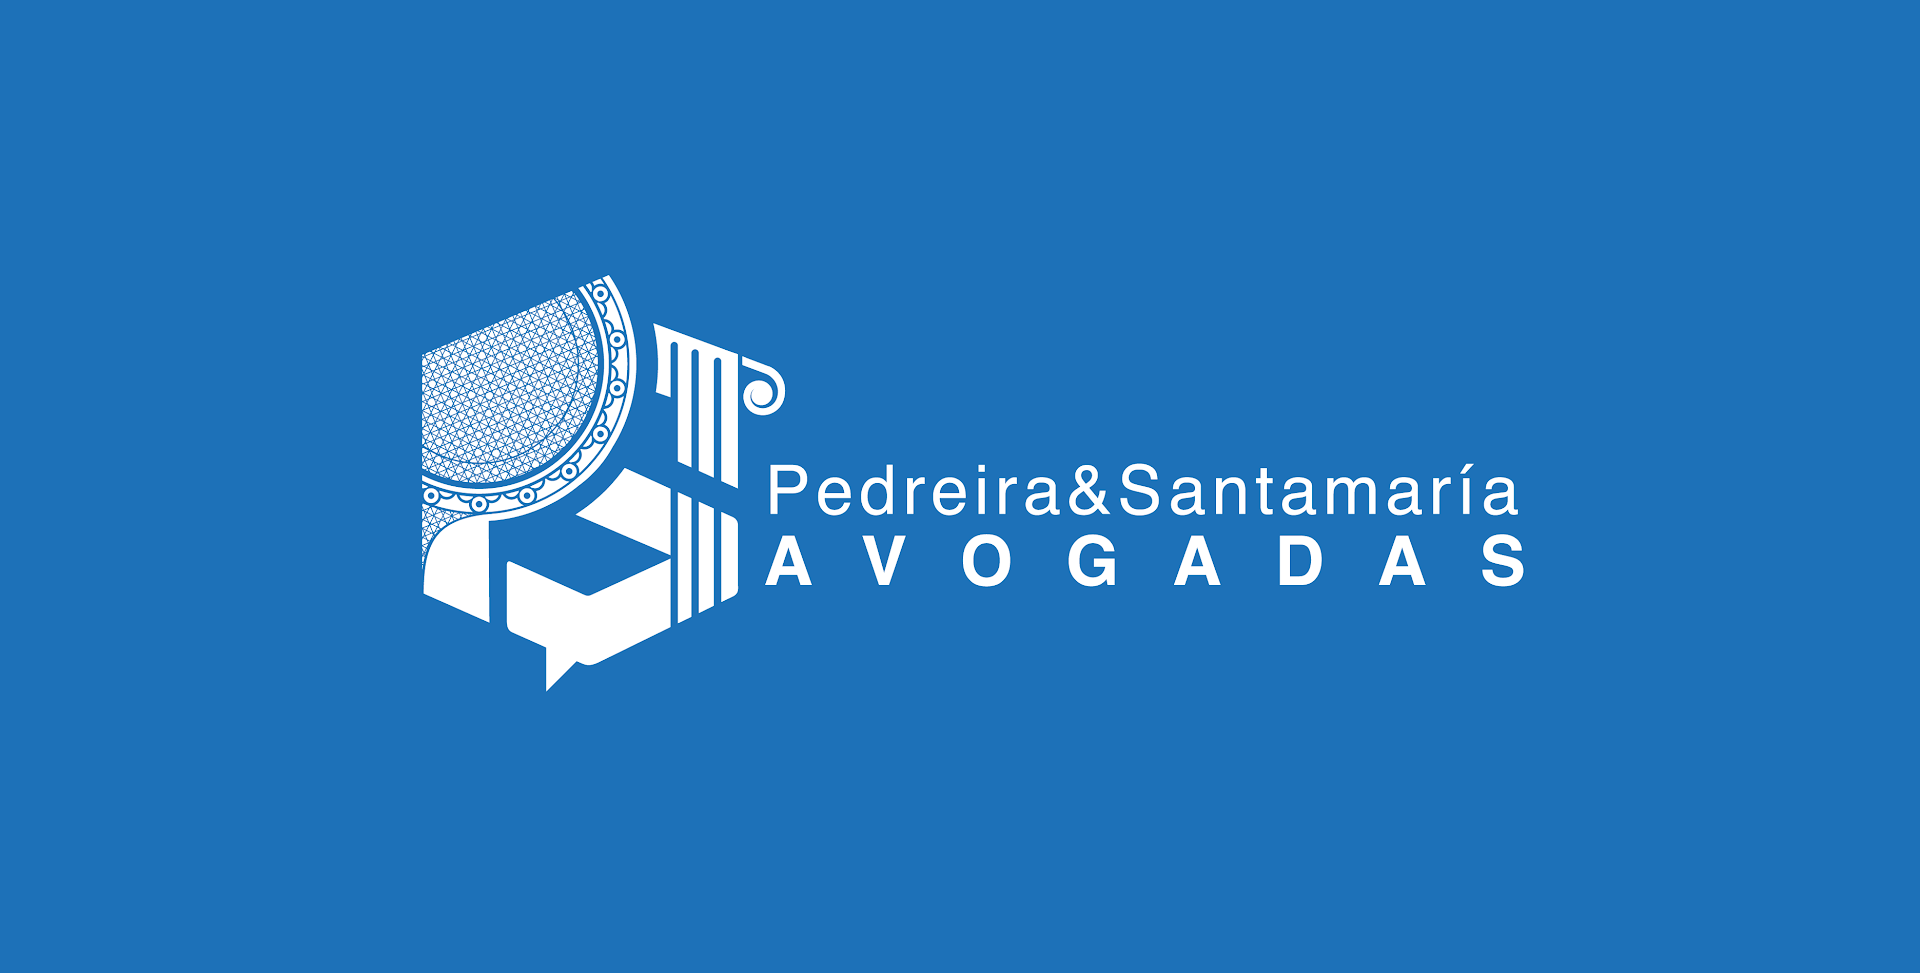 Pedreira&Santamaría Avogadas